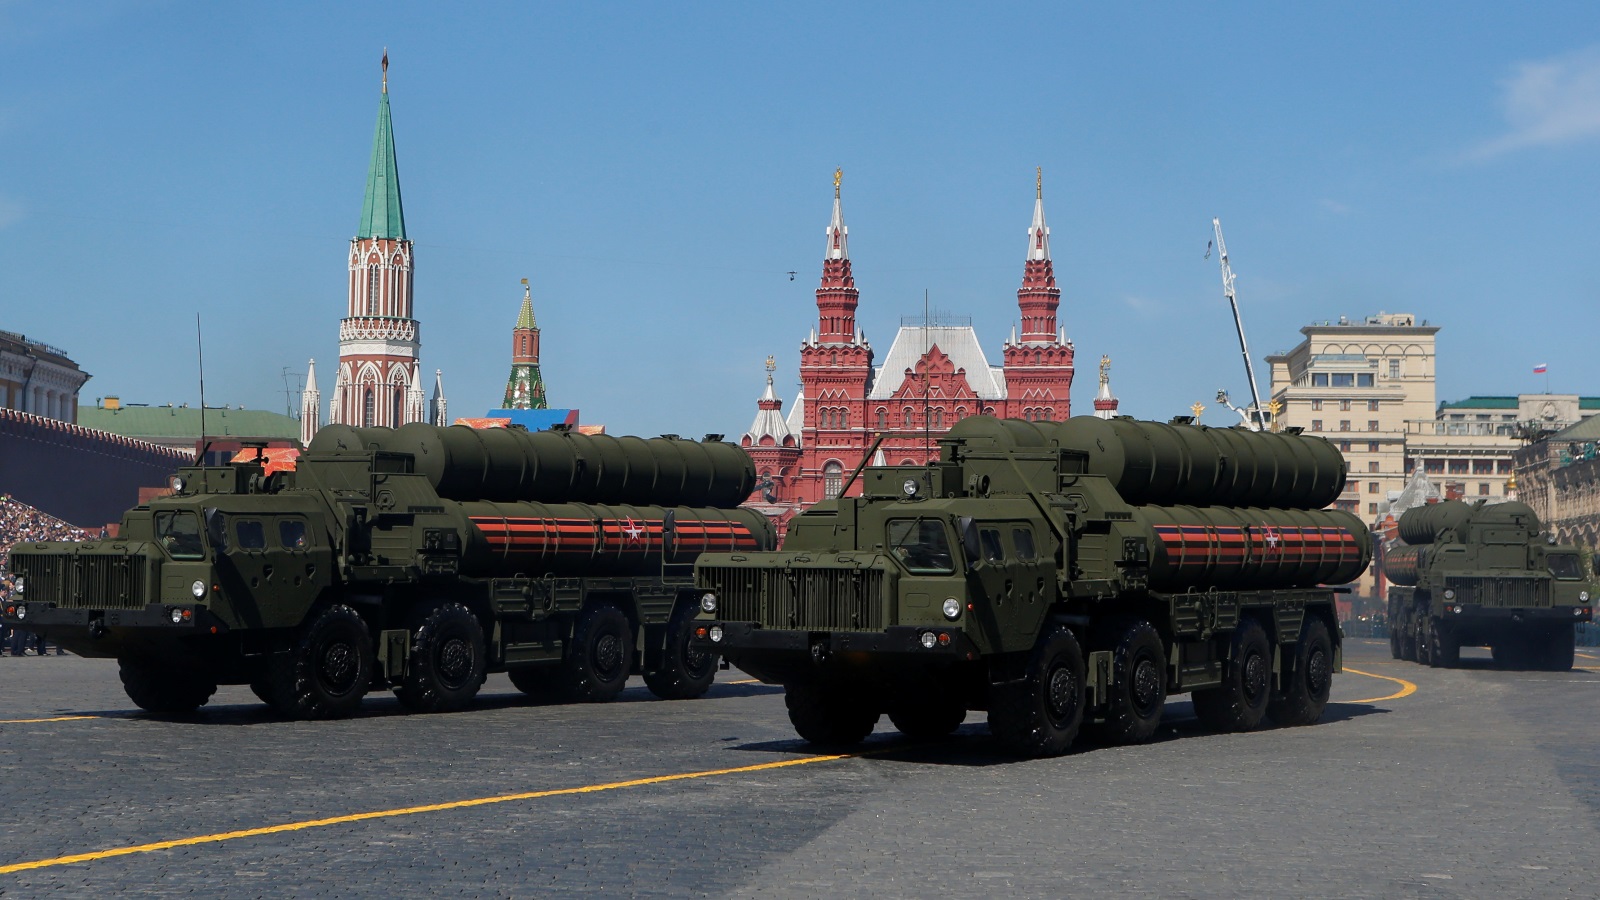 منظومة صواريخ إس 400 نشرتها موسكو في سوريا وشبه جزيرة القرم بالإضافة إلى كامل التراب الروسي (رويترز)منظومة صواريخ إس 400 نشرتها موسكو في سوريا وشبه جزيرة القرم بالإضافة إلى كامل التراب الروسي 